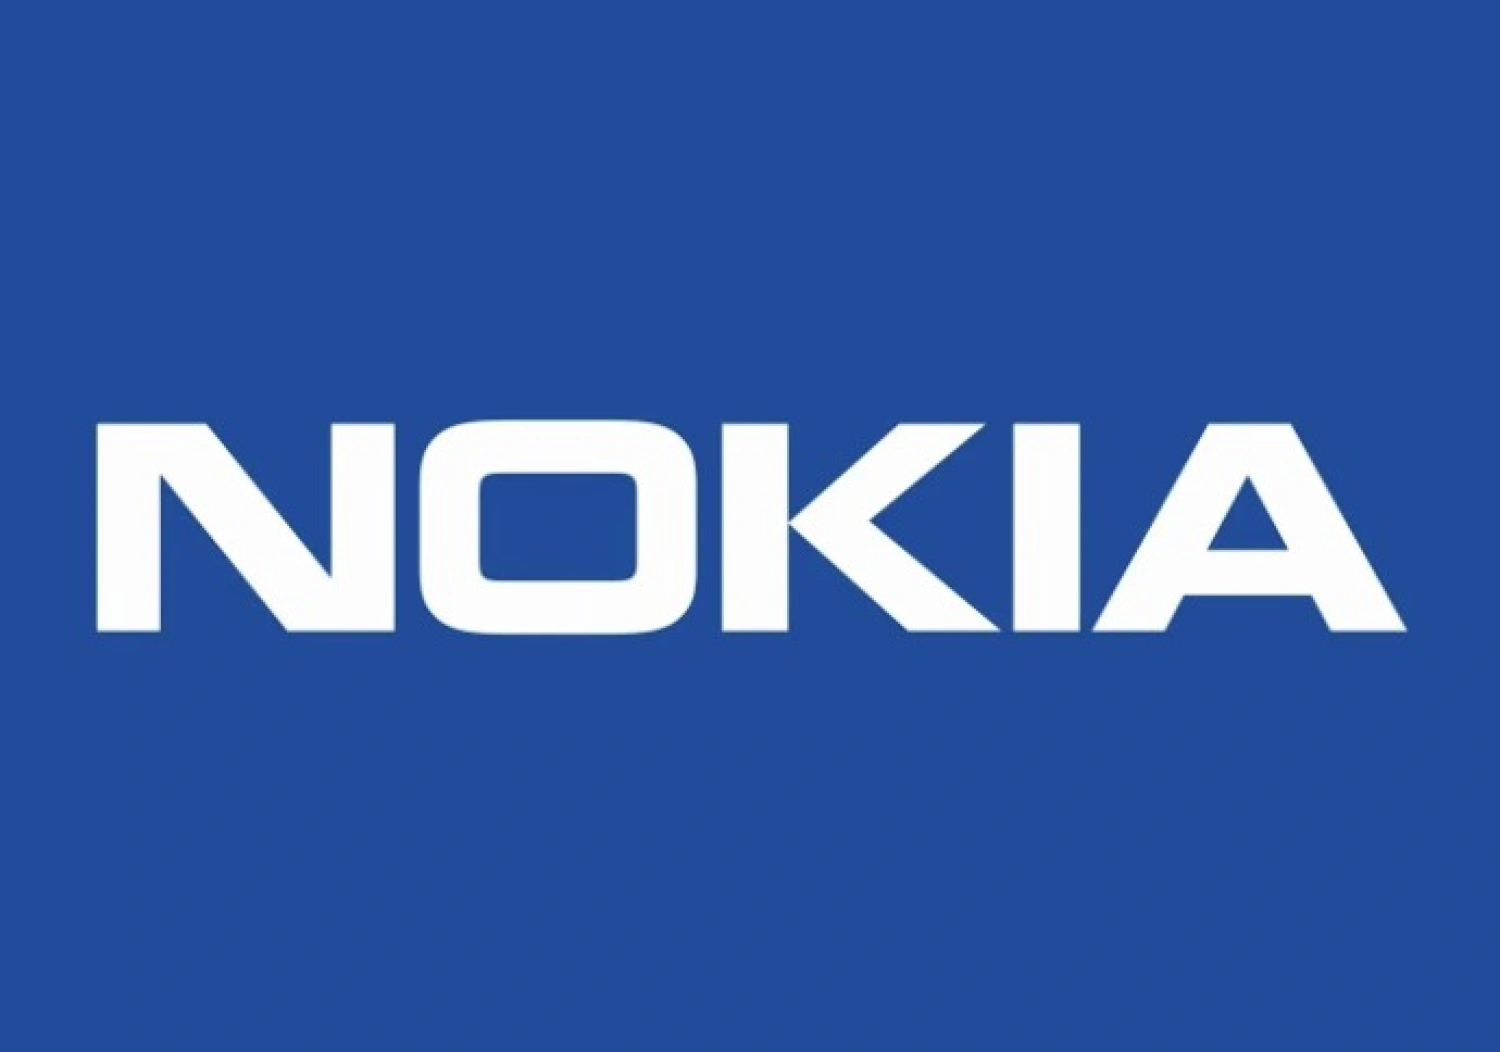 A Nokia kukázza ikonikus logóját, íme az új arculat